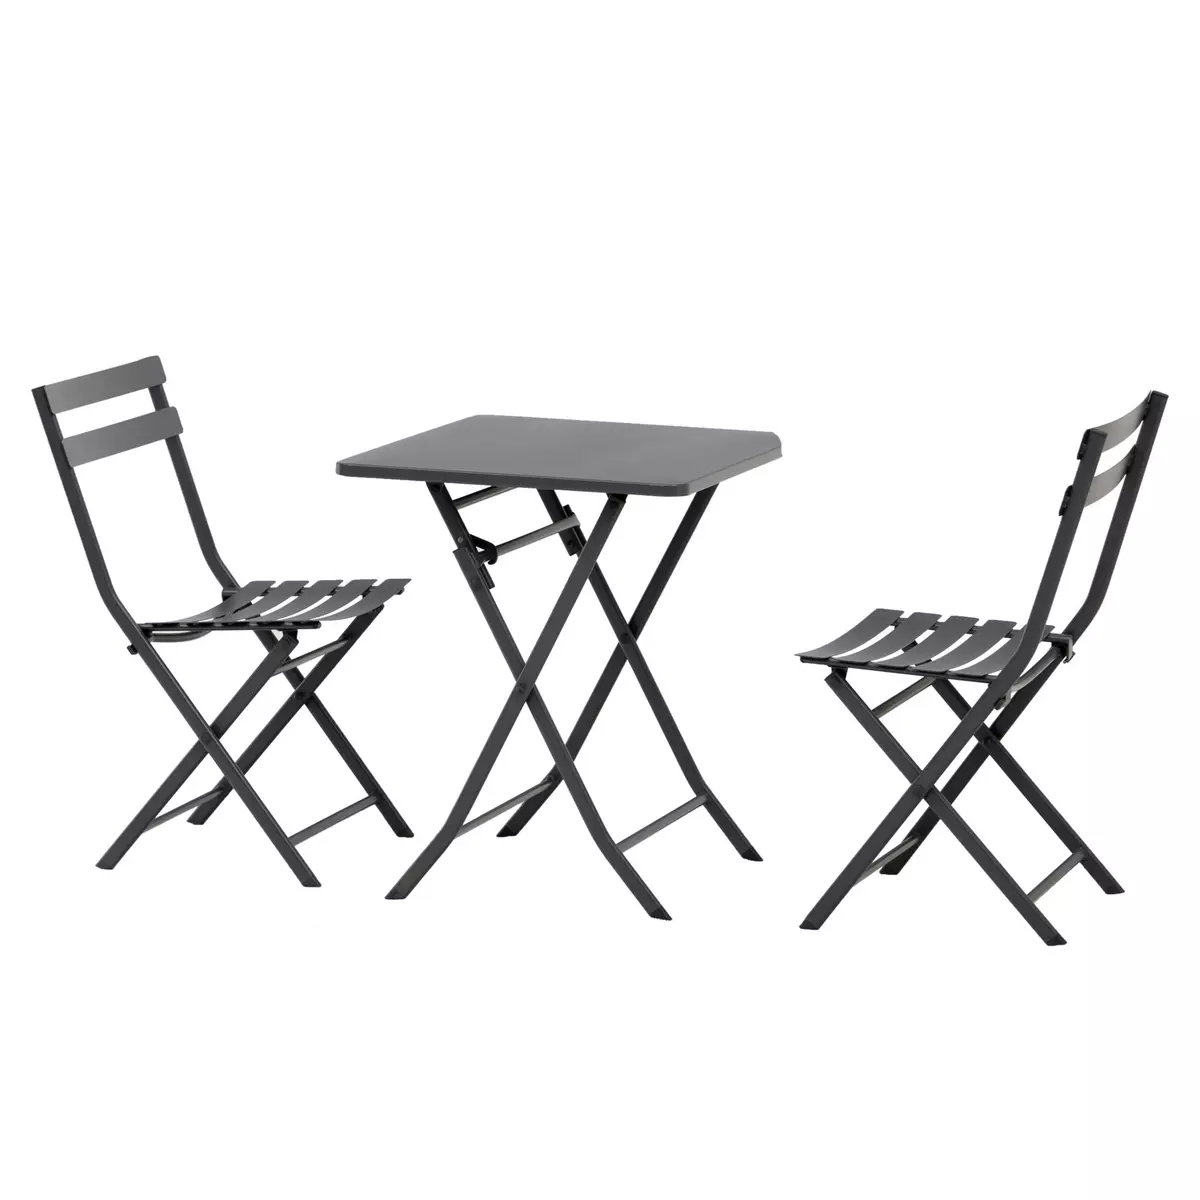 OUTSUNNY Salon de jardin bistro pliable - table carrée dim. 60L x 60l x 71H cm avec 2 chaises - métal thermolaqué gris